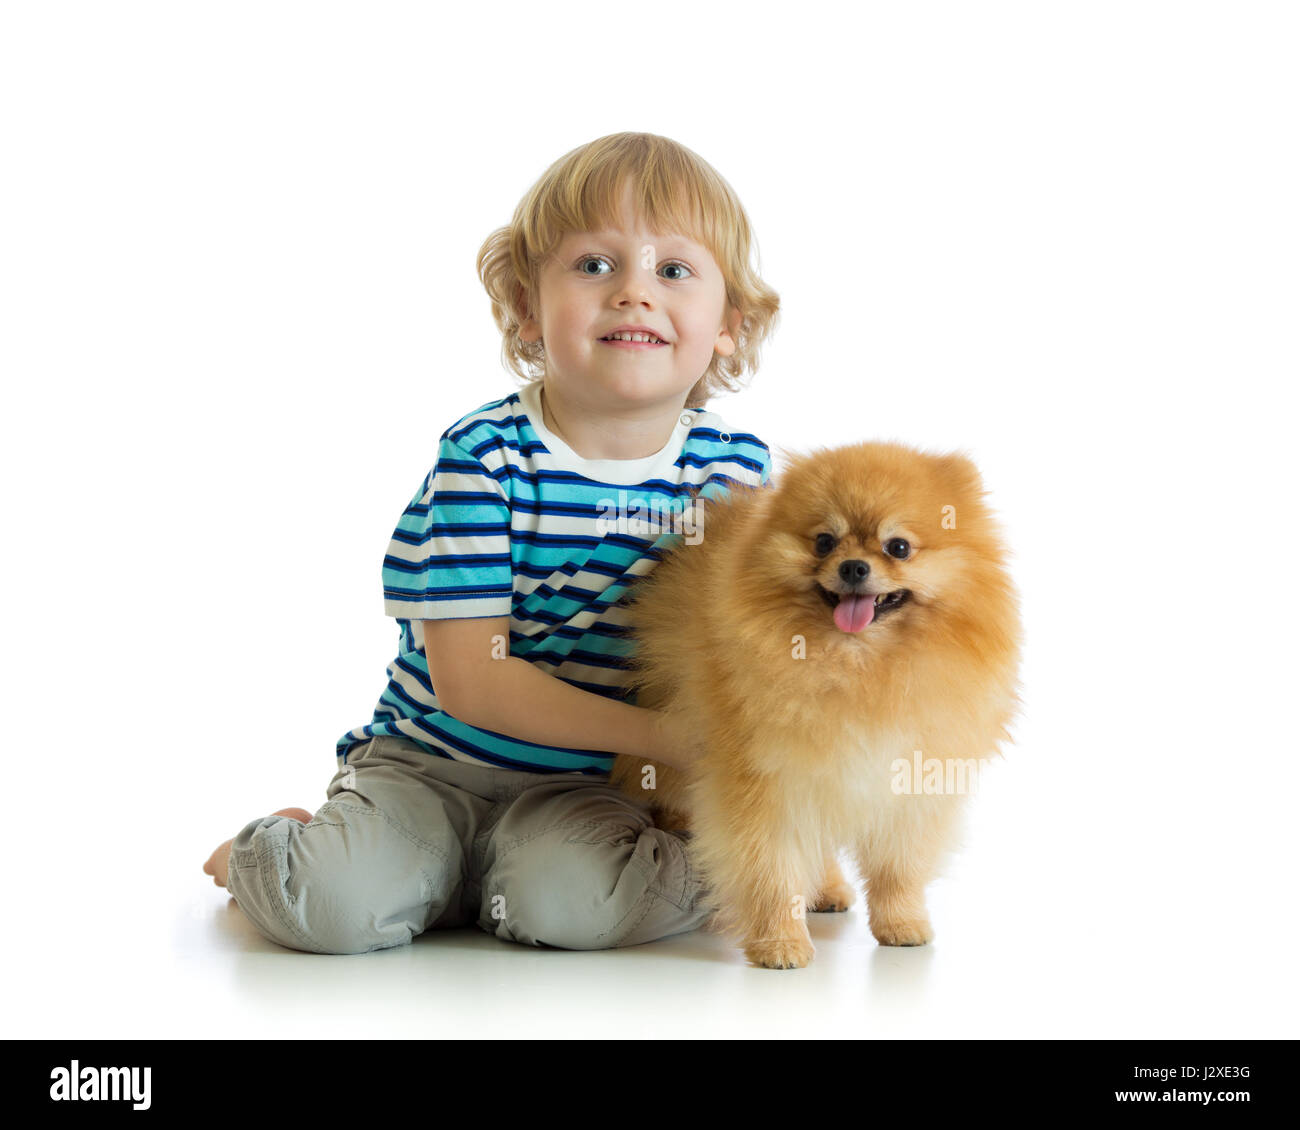 Little boy with dog spitz, isolated on white background Stock Photo